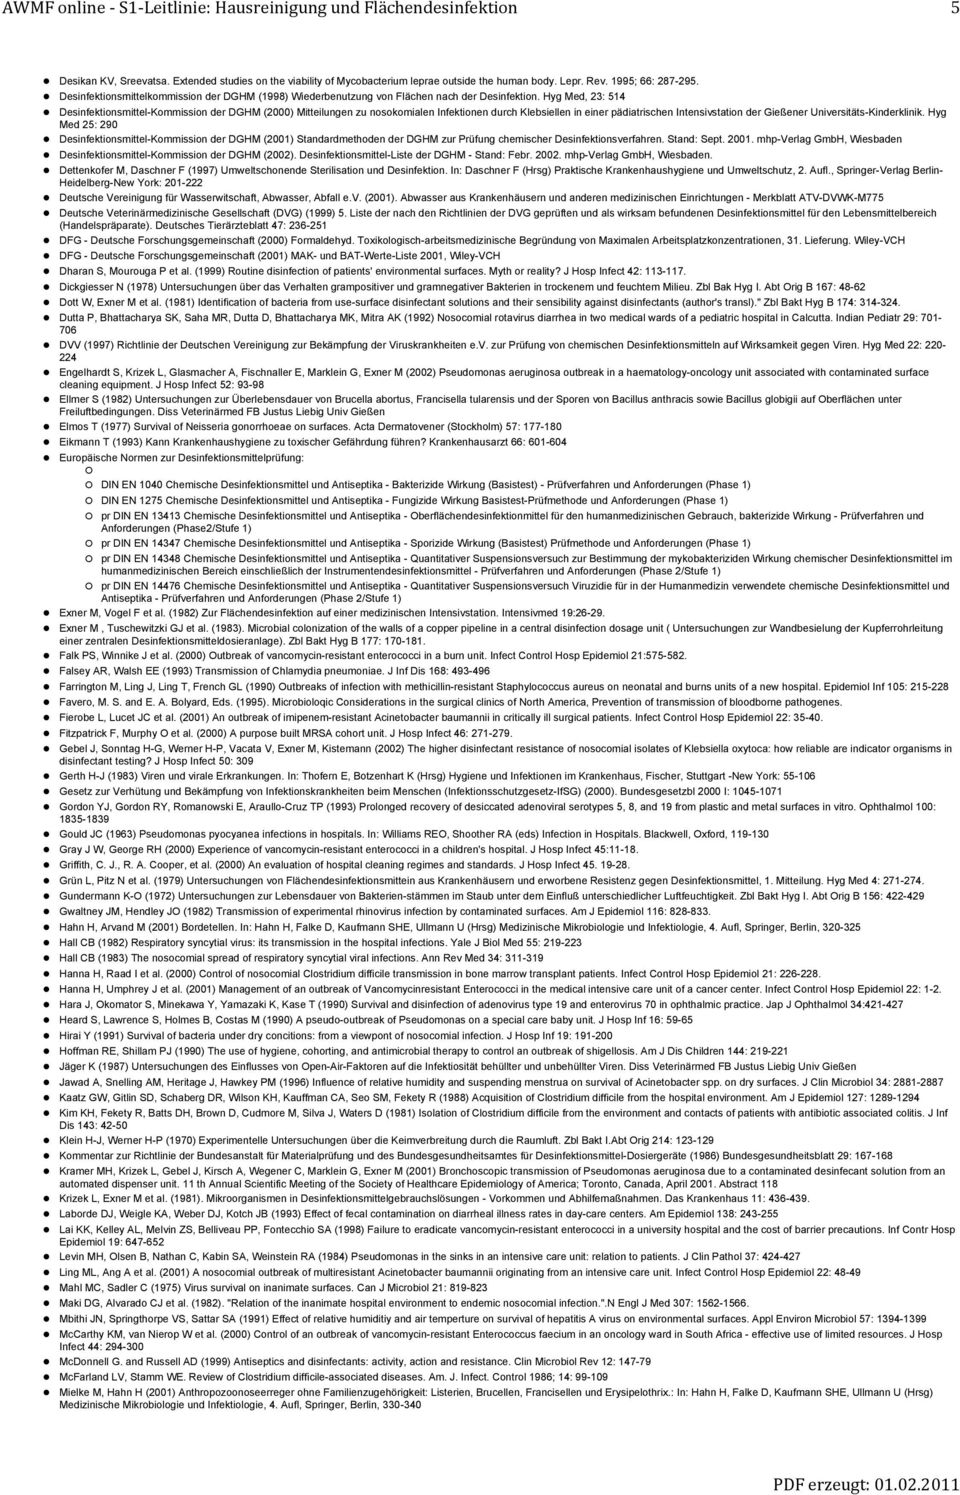 Hyg Med, 23: 514 smittel-kommission der DGHM (2000) Mitteilungen zu nosokomialen Infektionen durch Klebsiellen in einer pädiatrischen Intensivstation der Gießener Universitäts-Kinderklinik.